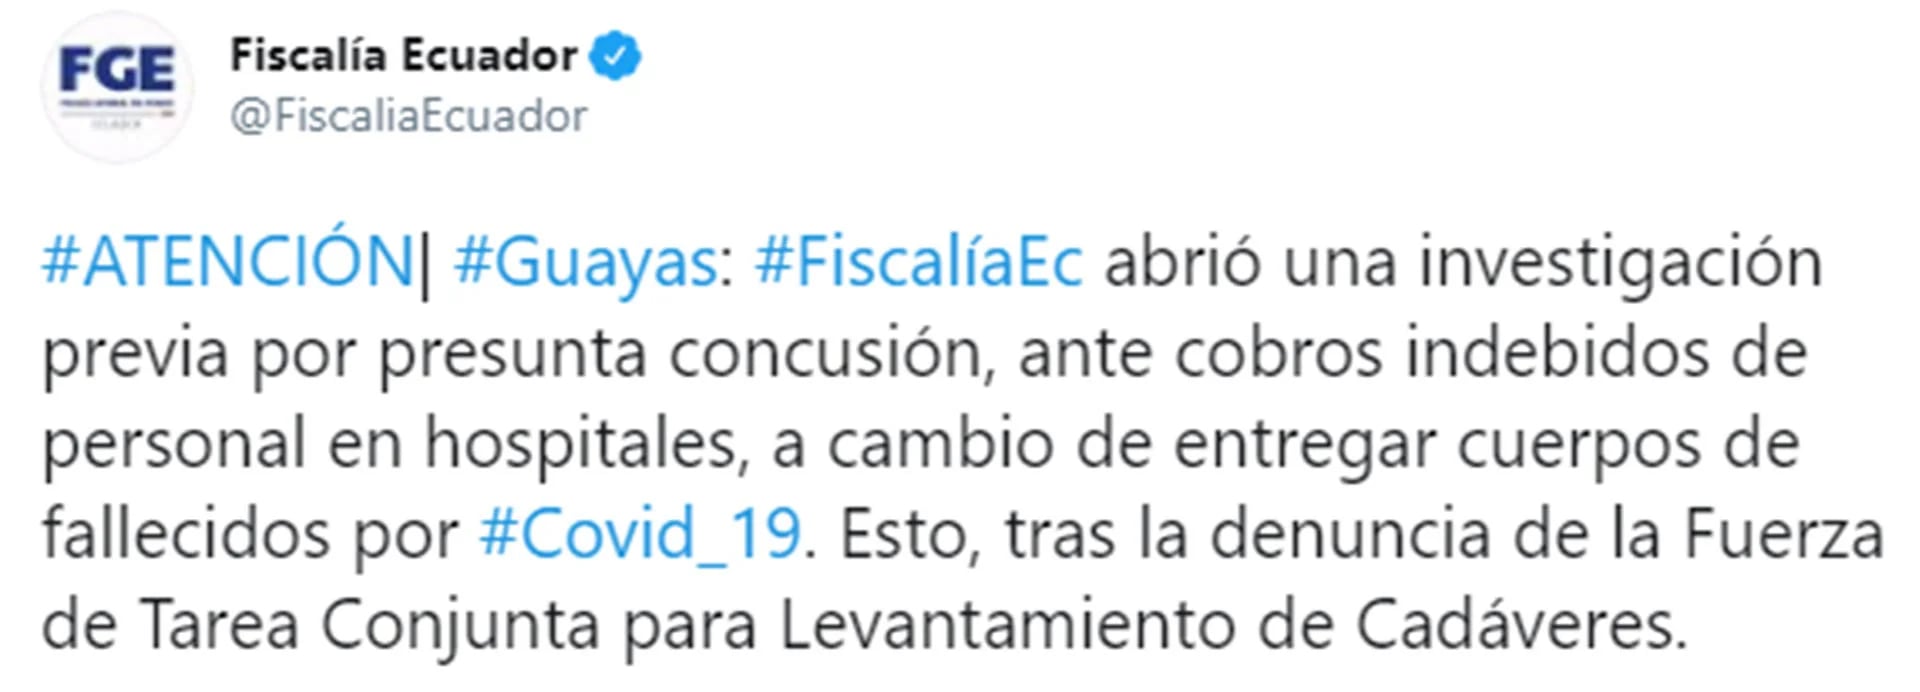 El tuit de la Fiscalía de Ecuador